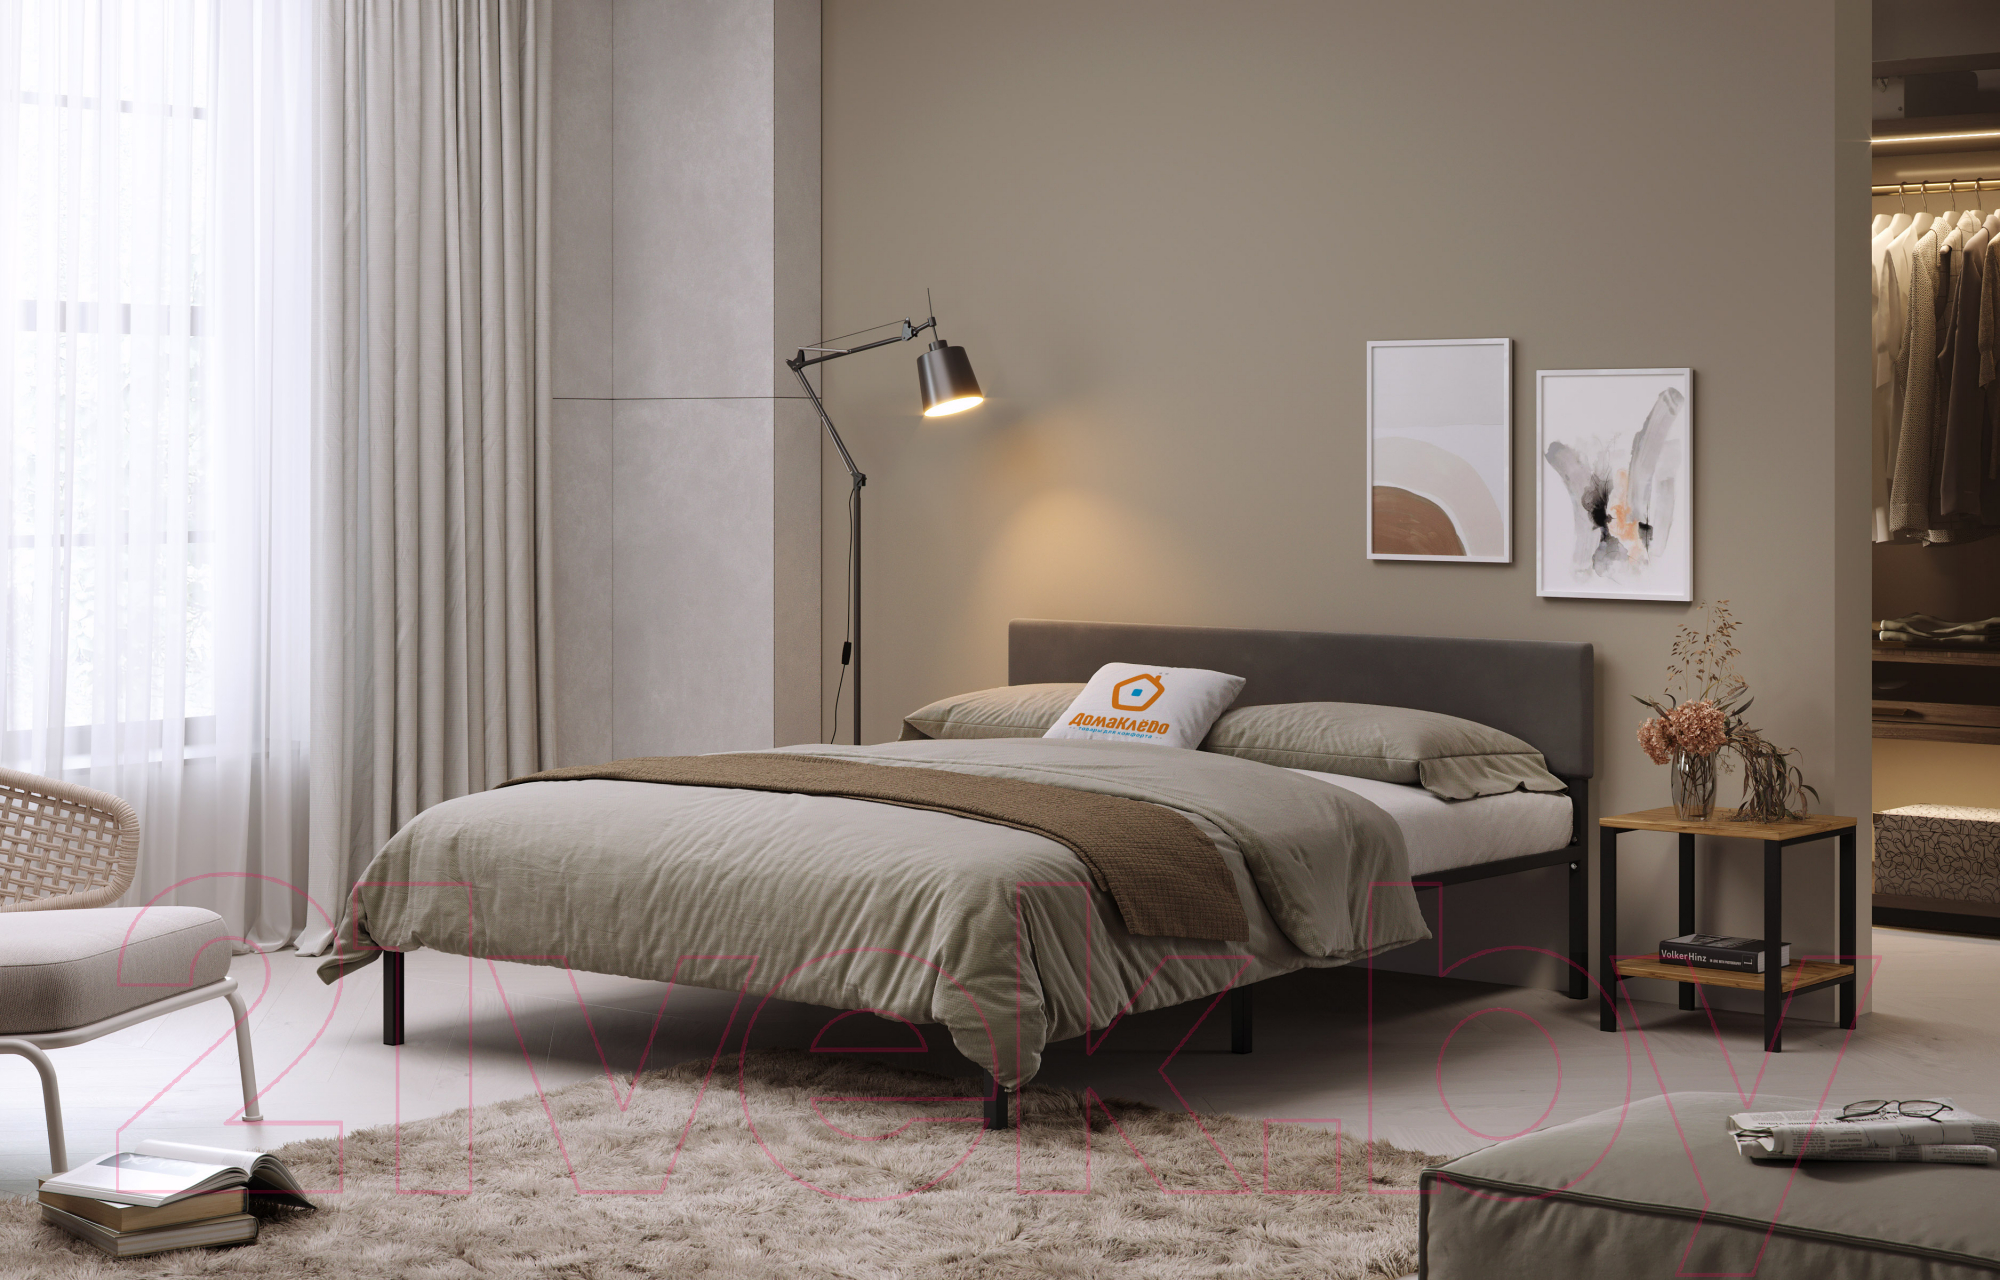 Двуспальная кровать Домаклево Лофт с мягкой спинкой 160x200